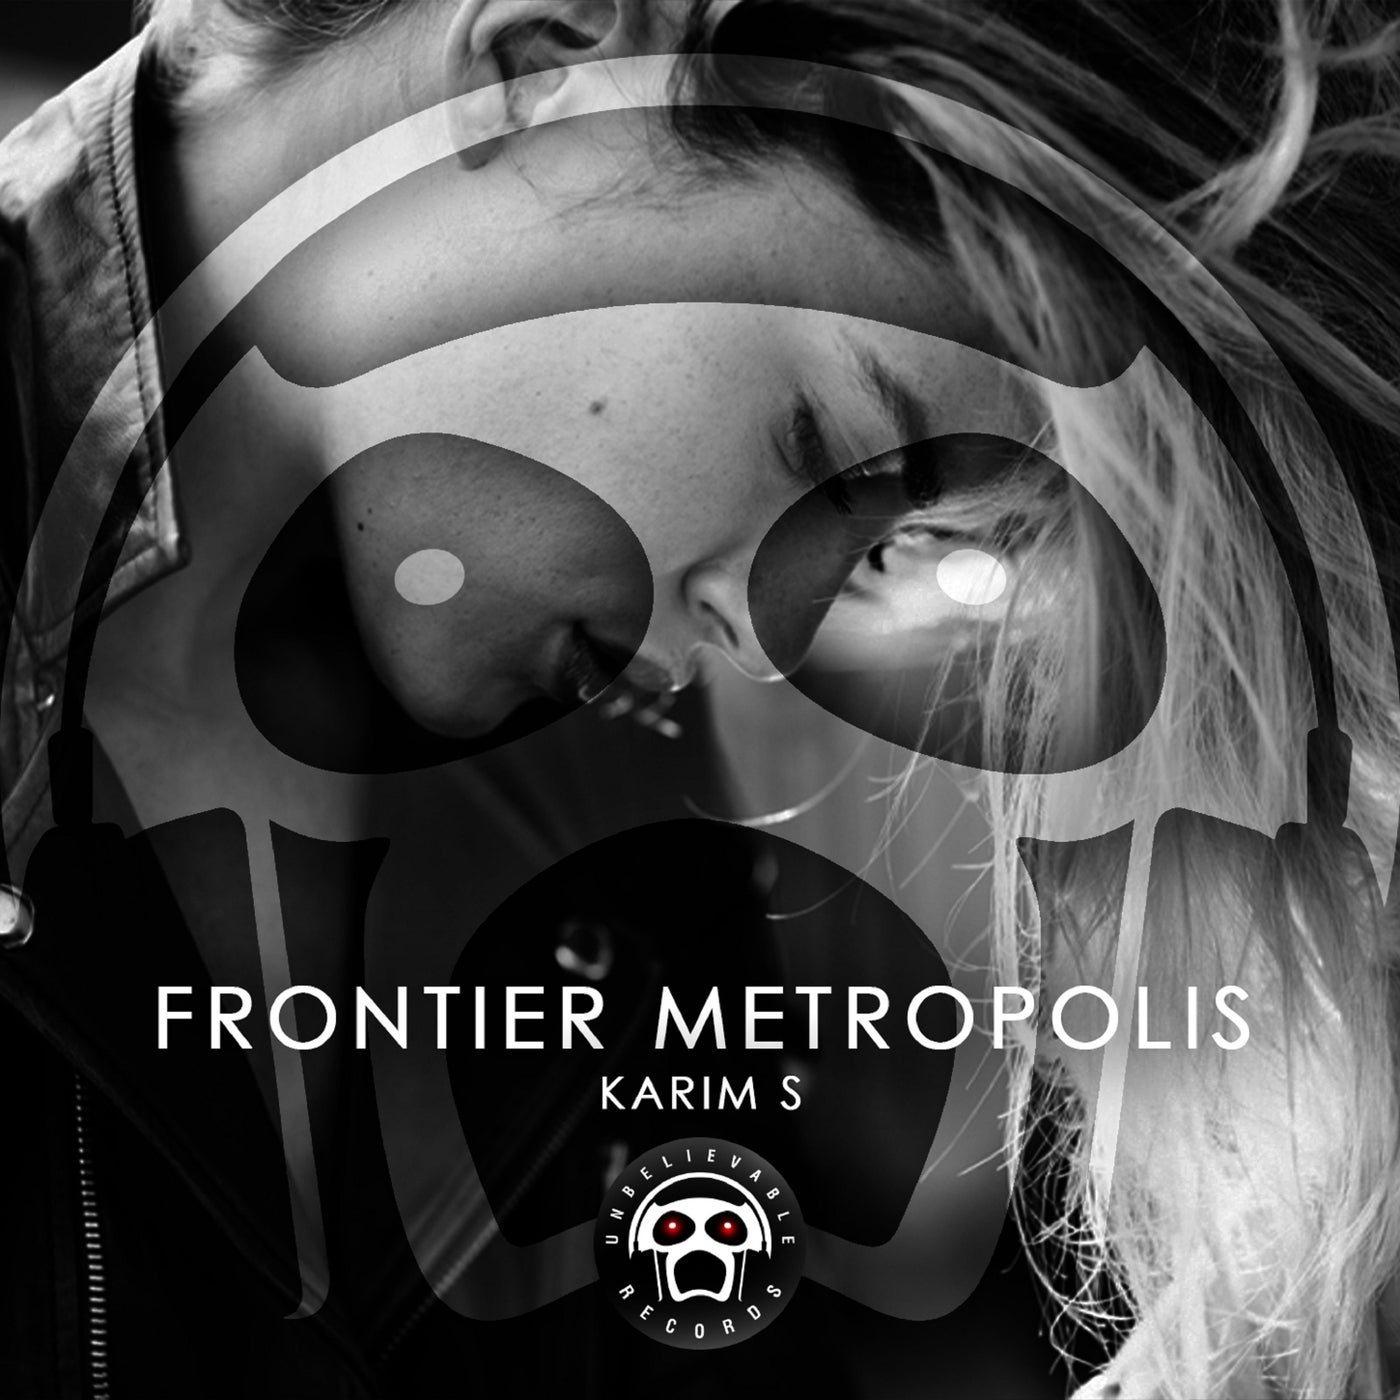 Frontier Metropolis